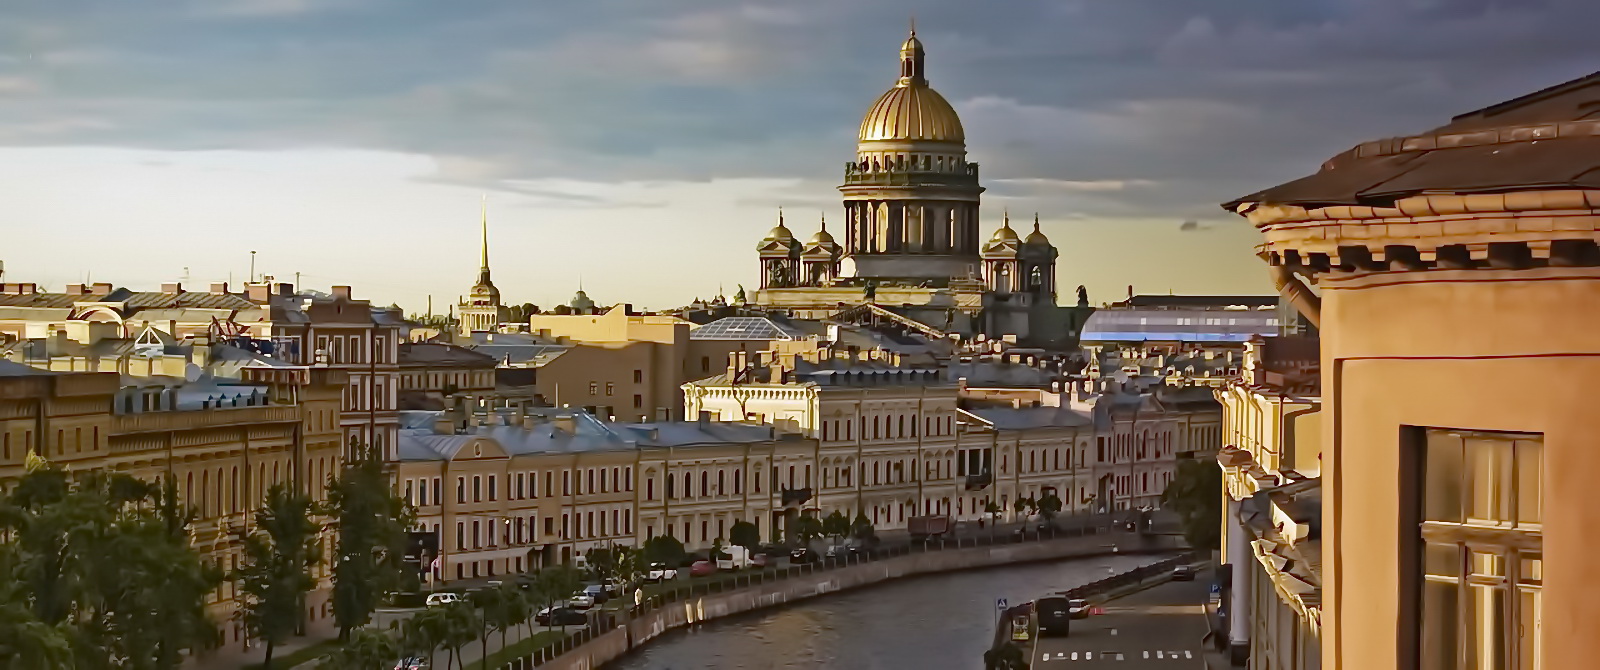 Речные круизы в Санкт-Петербург